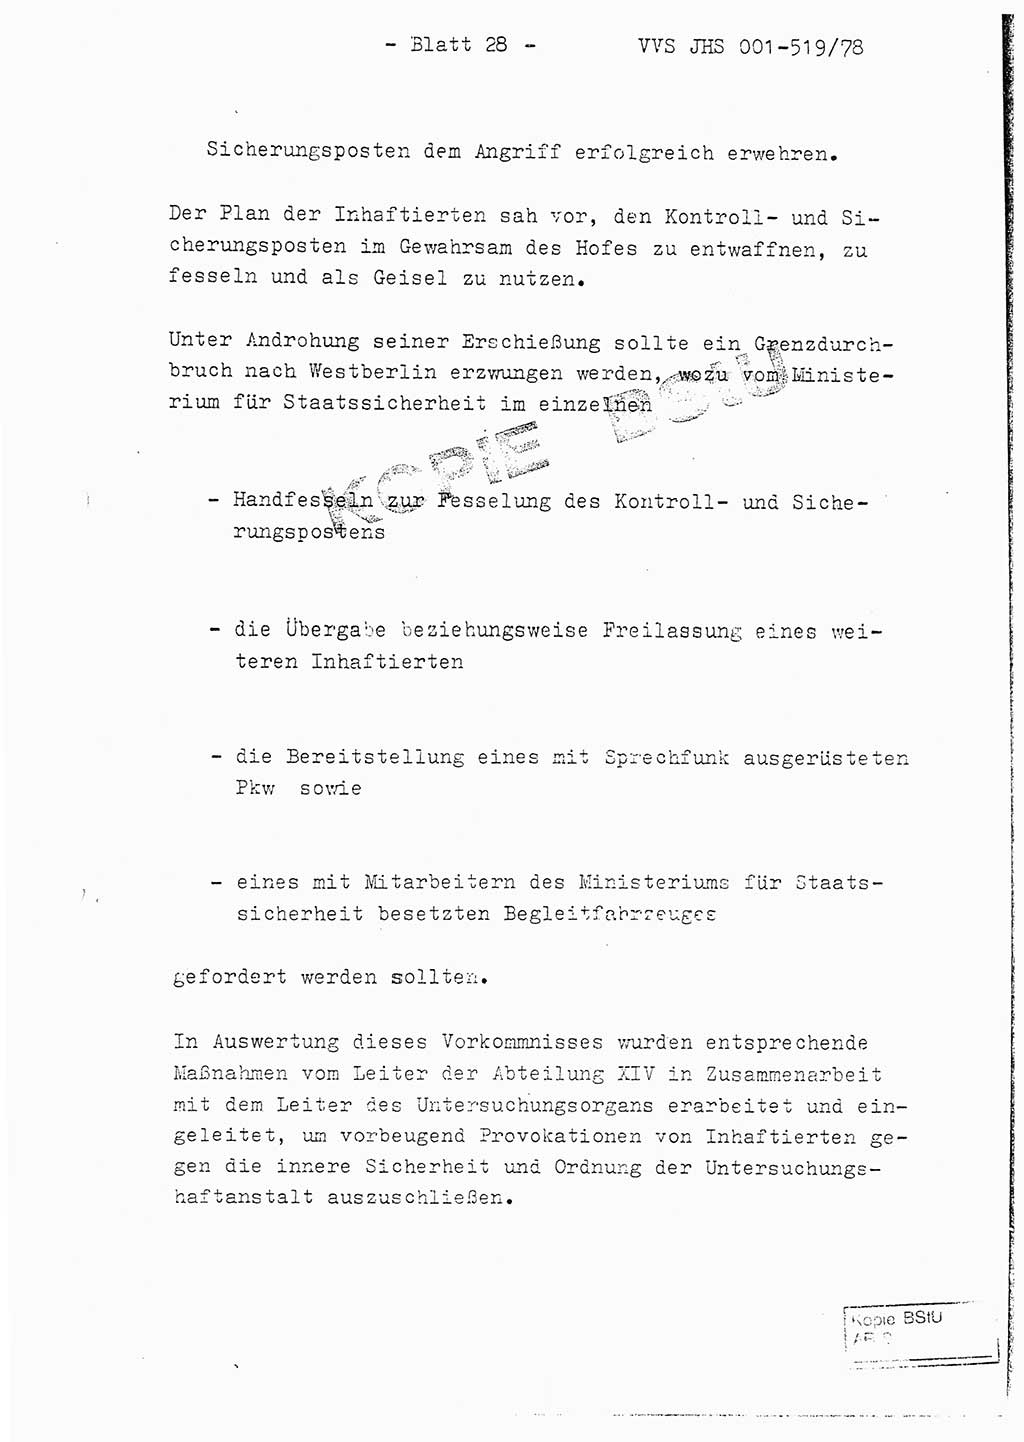 Fachschulabschlußarbeit Hauptmann Alfons Lützelberger (Abt. ⅩⅣ), Ministerium für Staatssicherheit (MfS) [Deutsche Demokratische Republik (DDR)], Juristische Hochschule (JHS), Vertrauliche Verschlußsache (VVS) 001-519/78, Potsdam 1978, Blatt 28 (FS-Abschl.-Arb. MfS DDR JHS VVS 001-519/78 1978, Bl. 28)